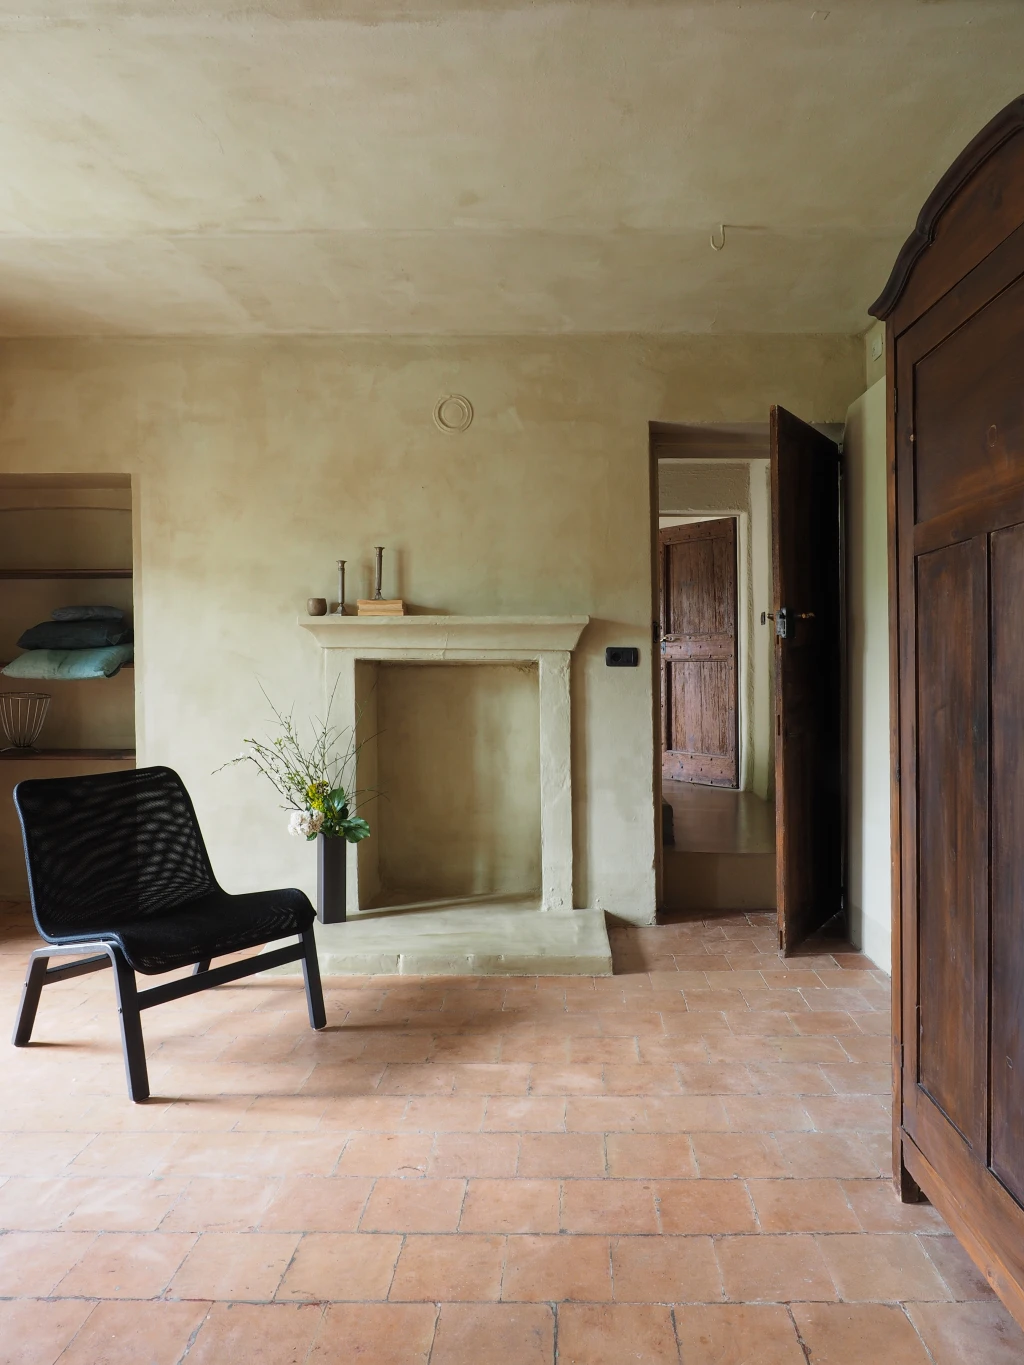 Stunning interior design, understated and simple - Piemonte